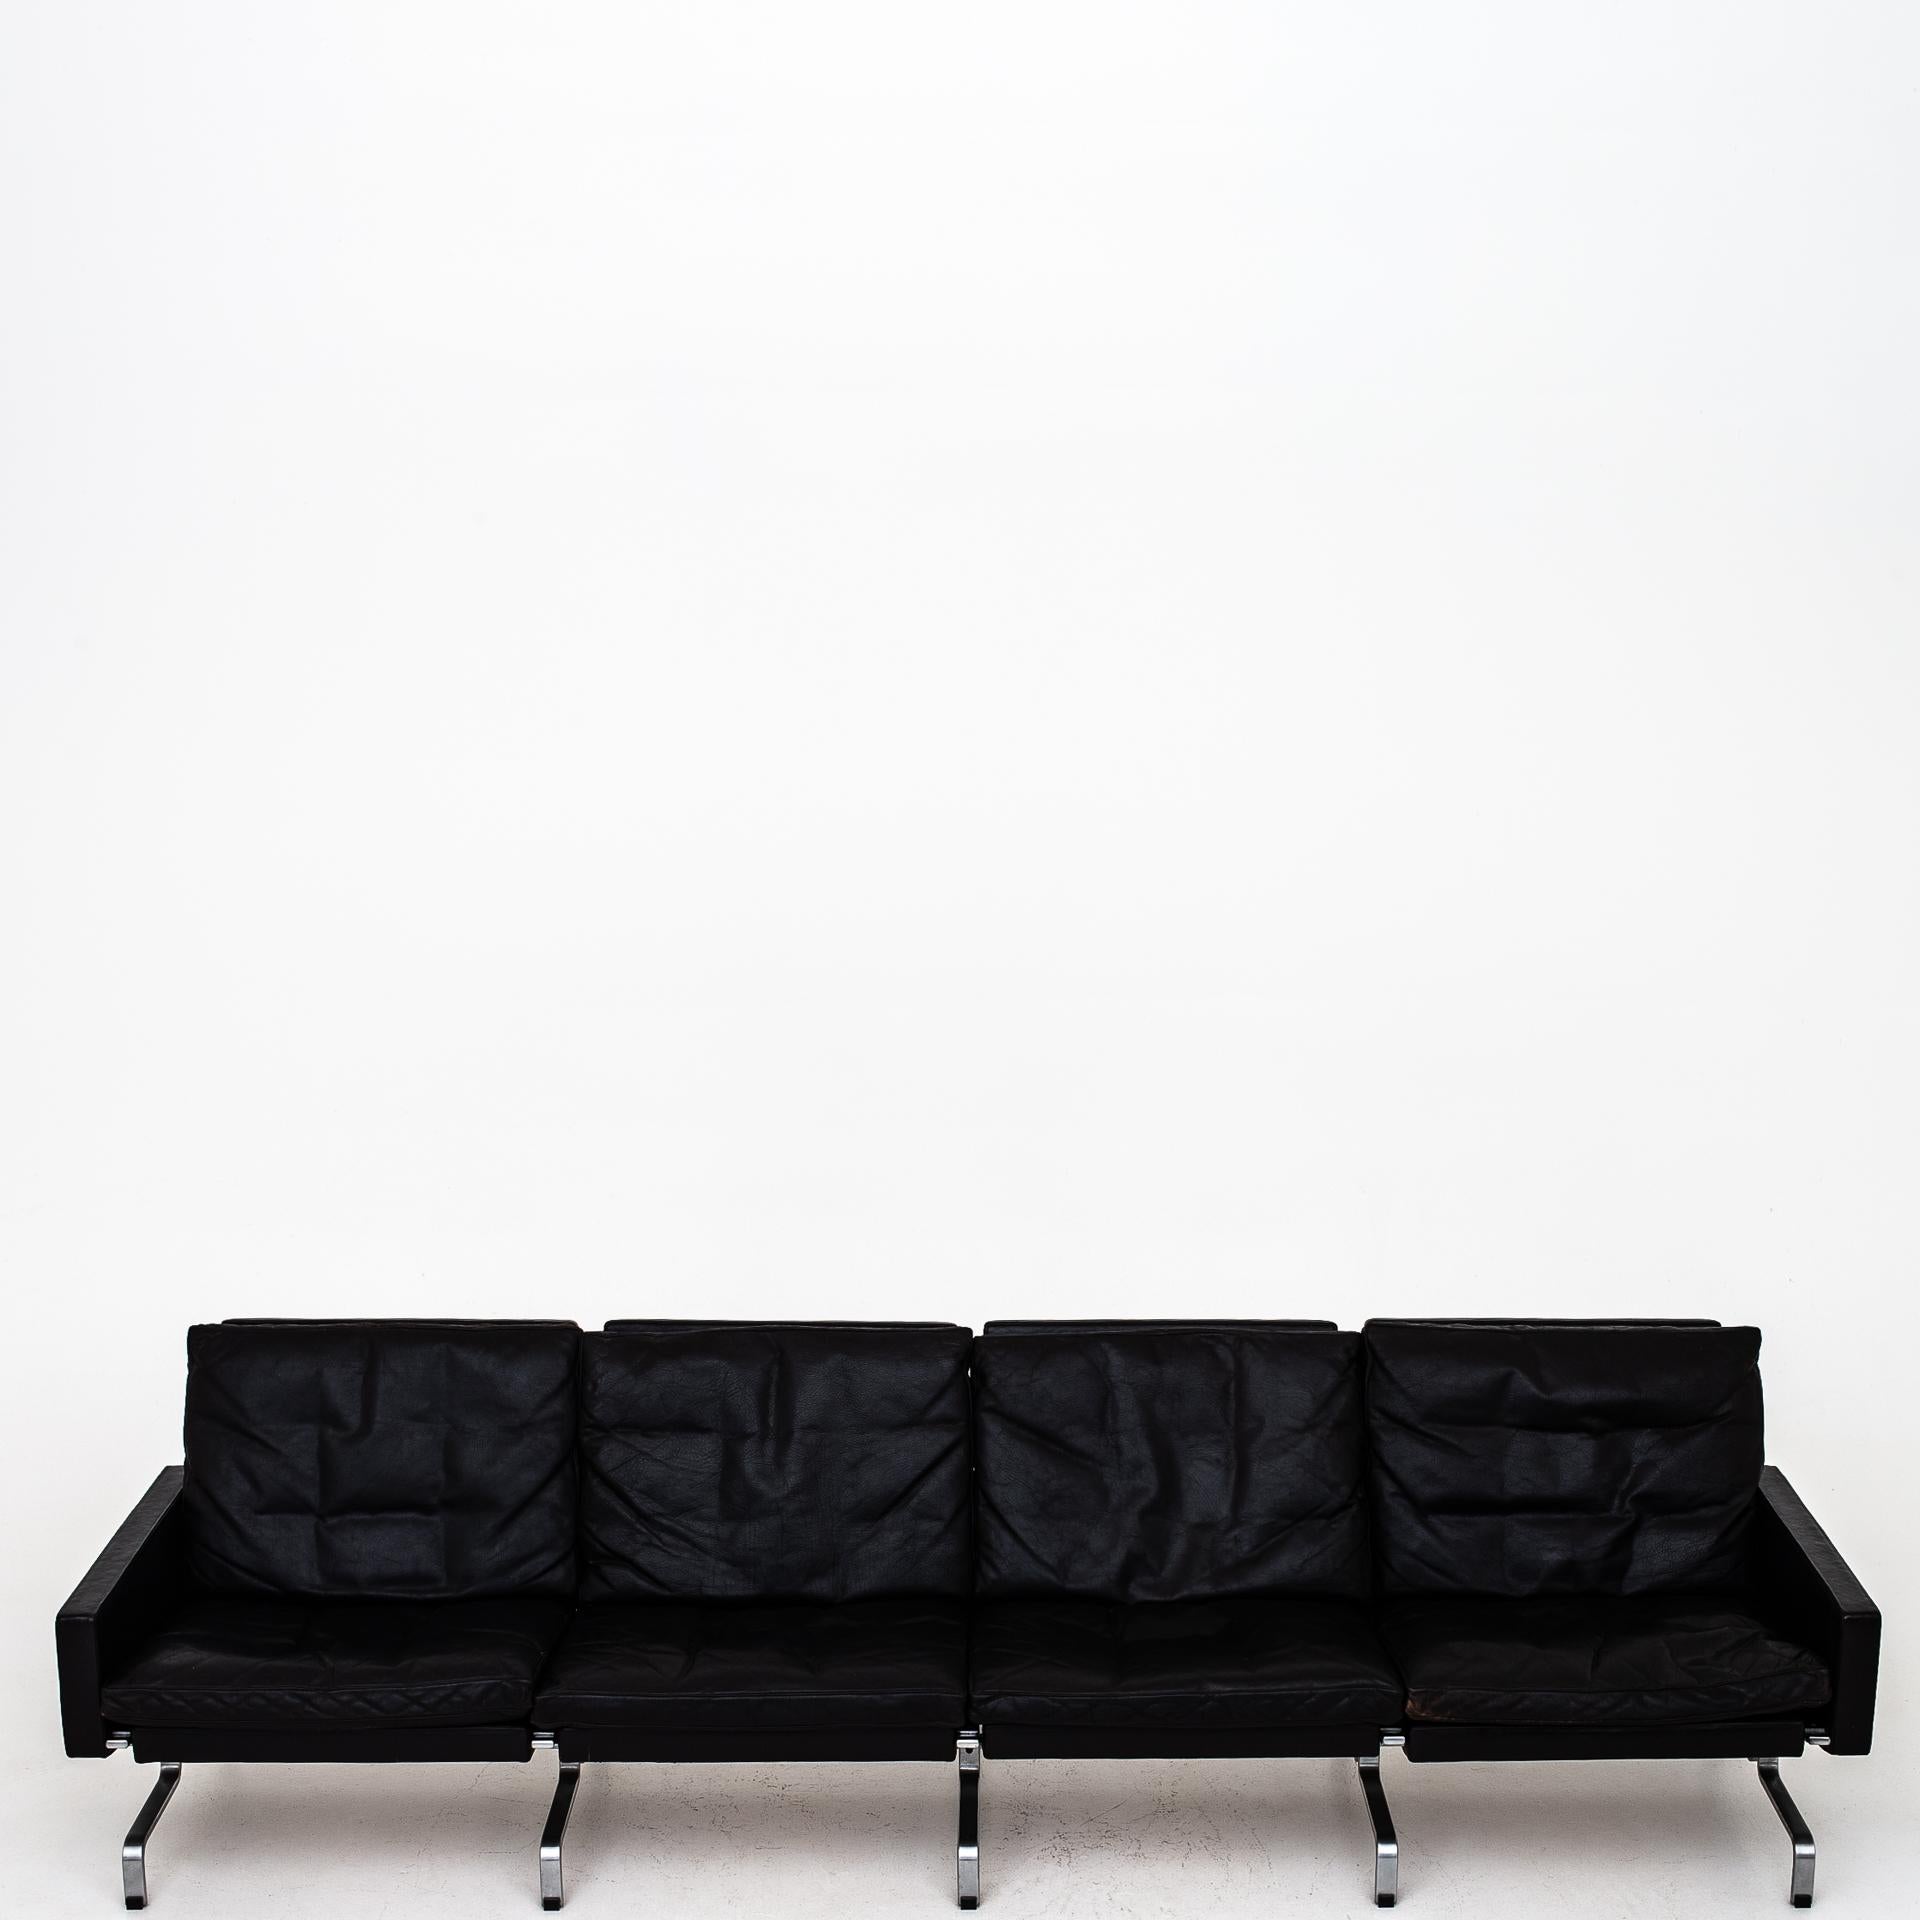 20th Century 4-Seat Sofa by Poul Kjærholm